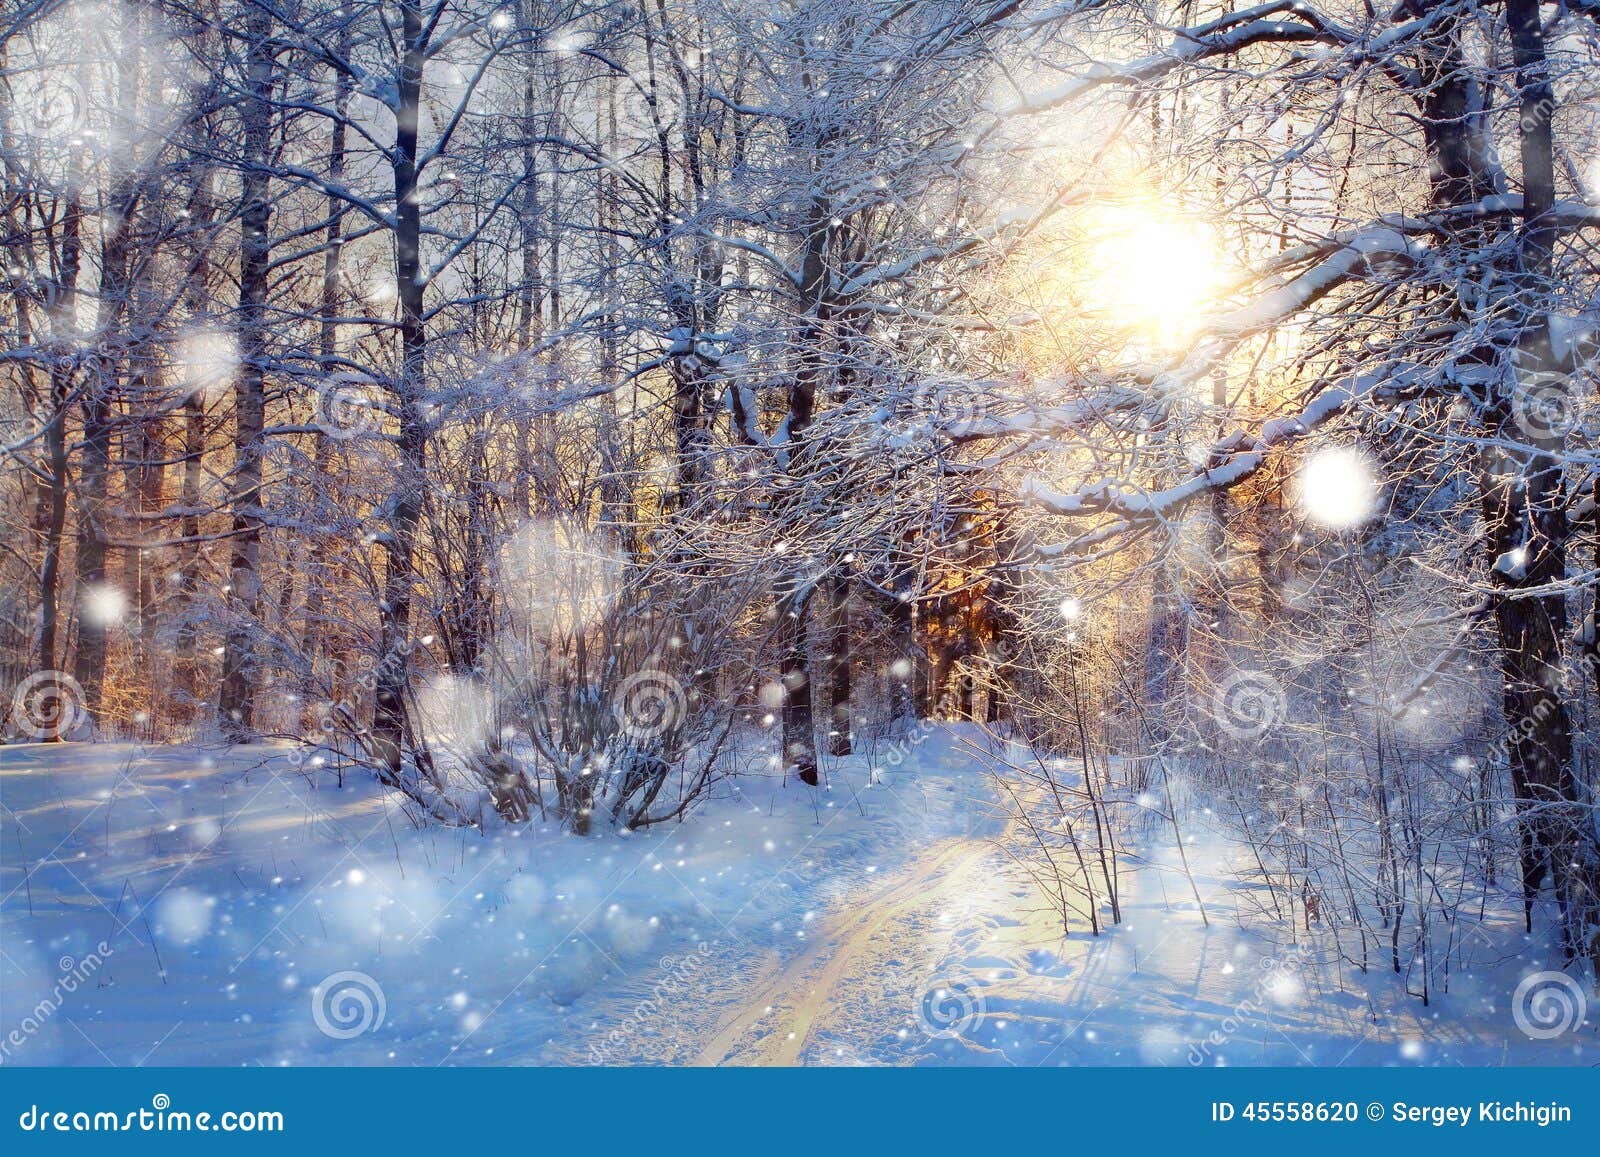 겨울 눈 아름다운 풍경 포스터 배경 그림, 겨울 눈 배경, 아름다운, 풍경 무료 다운로드를위한 배경 이미지